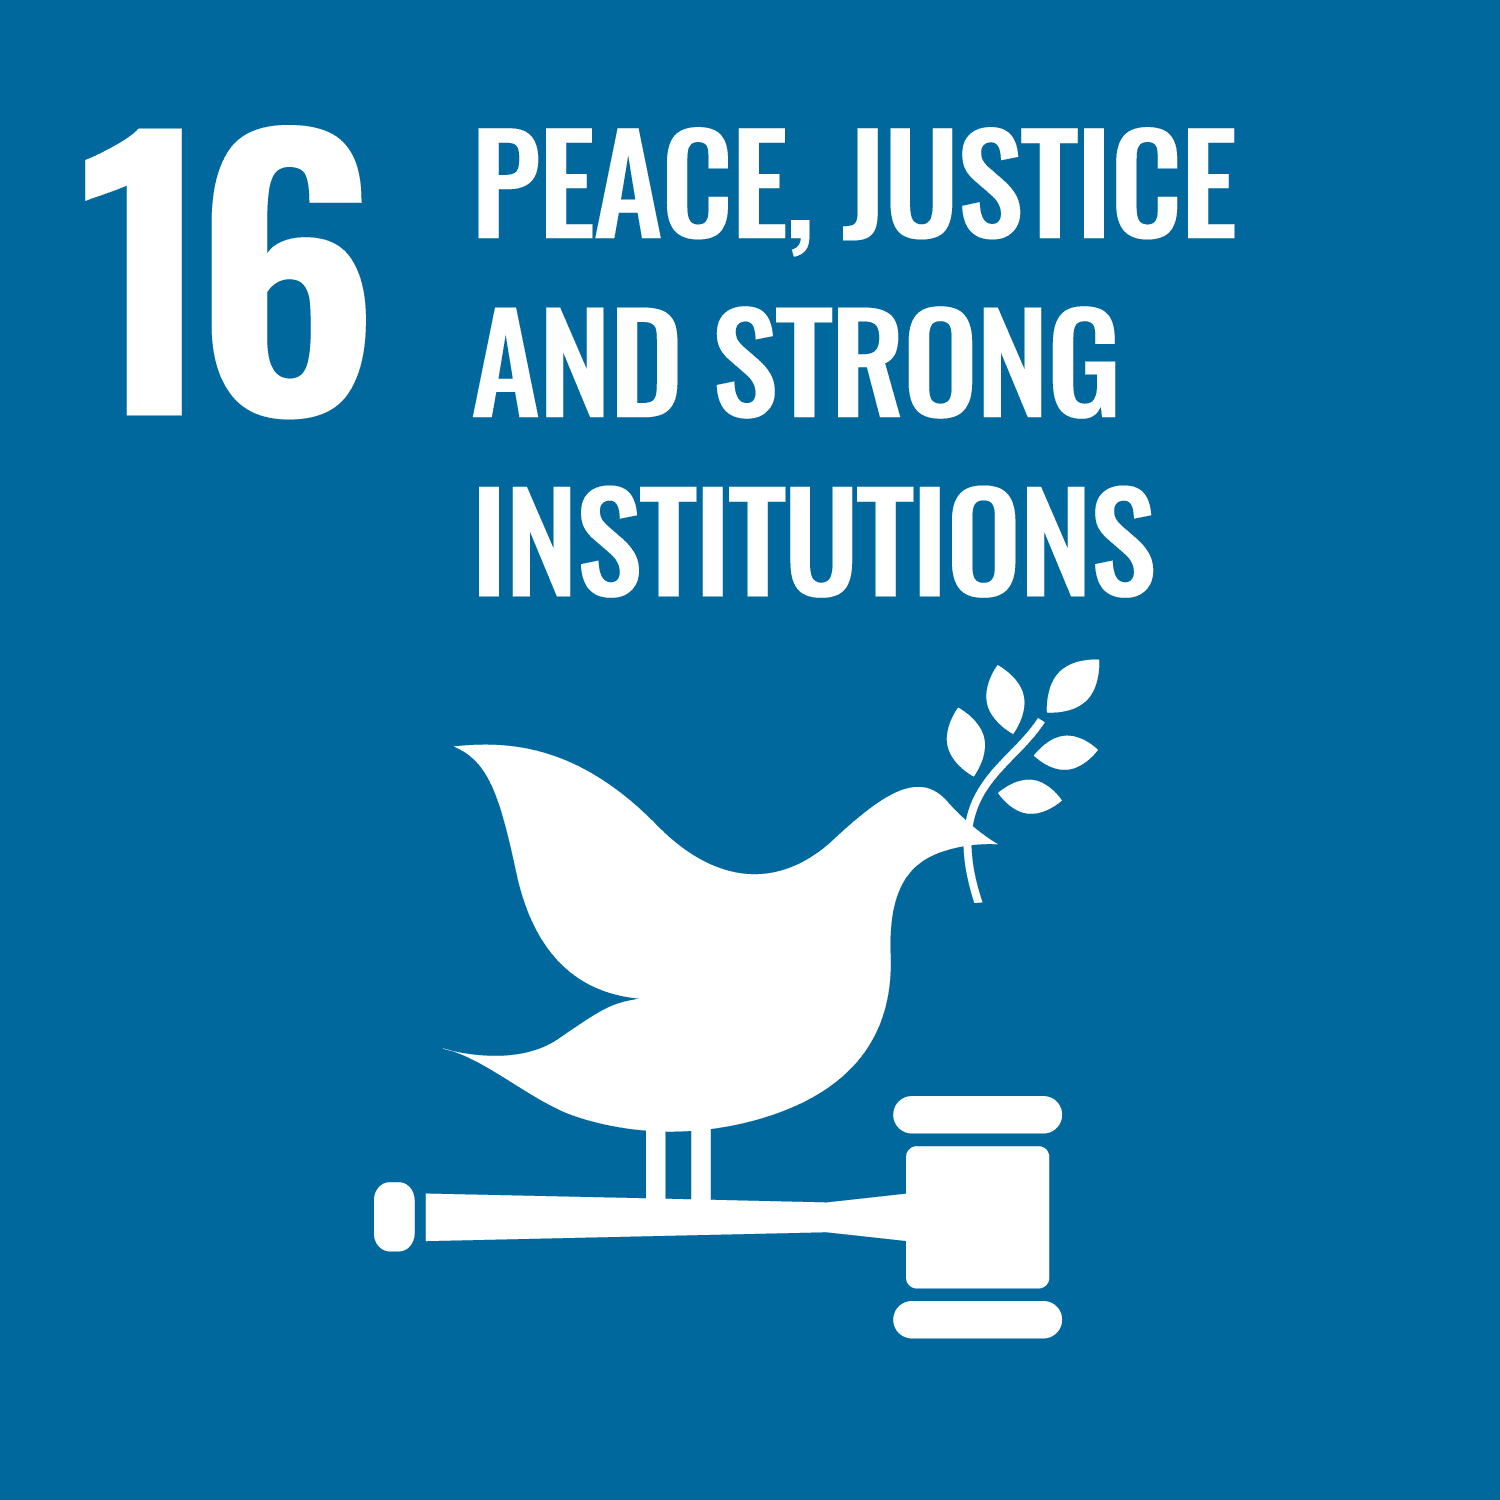 Frieden, Gerechtigkeit und starke Institutionen